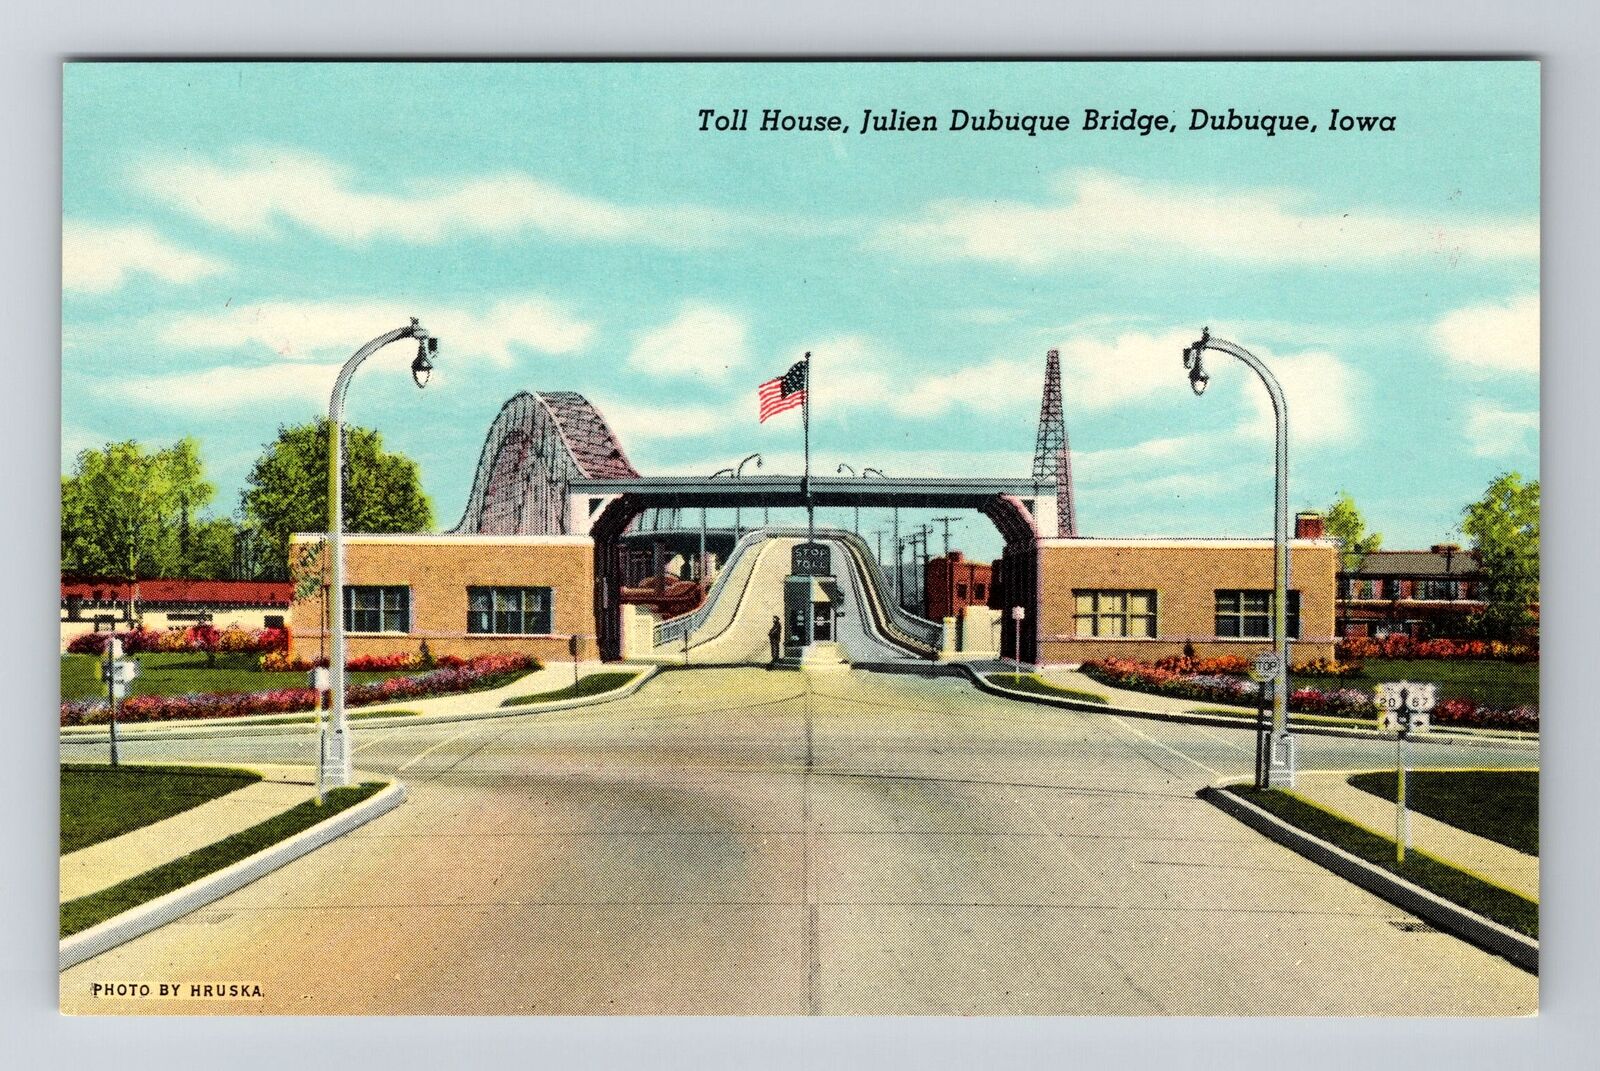 Dubuque IA-Iowa, Toll House, Julien Dubuque Bridge Vintage Souvenir Postcard